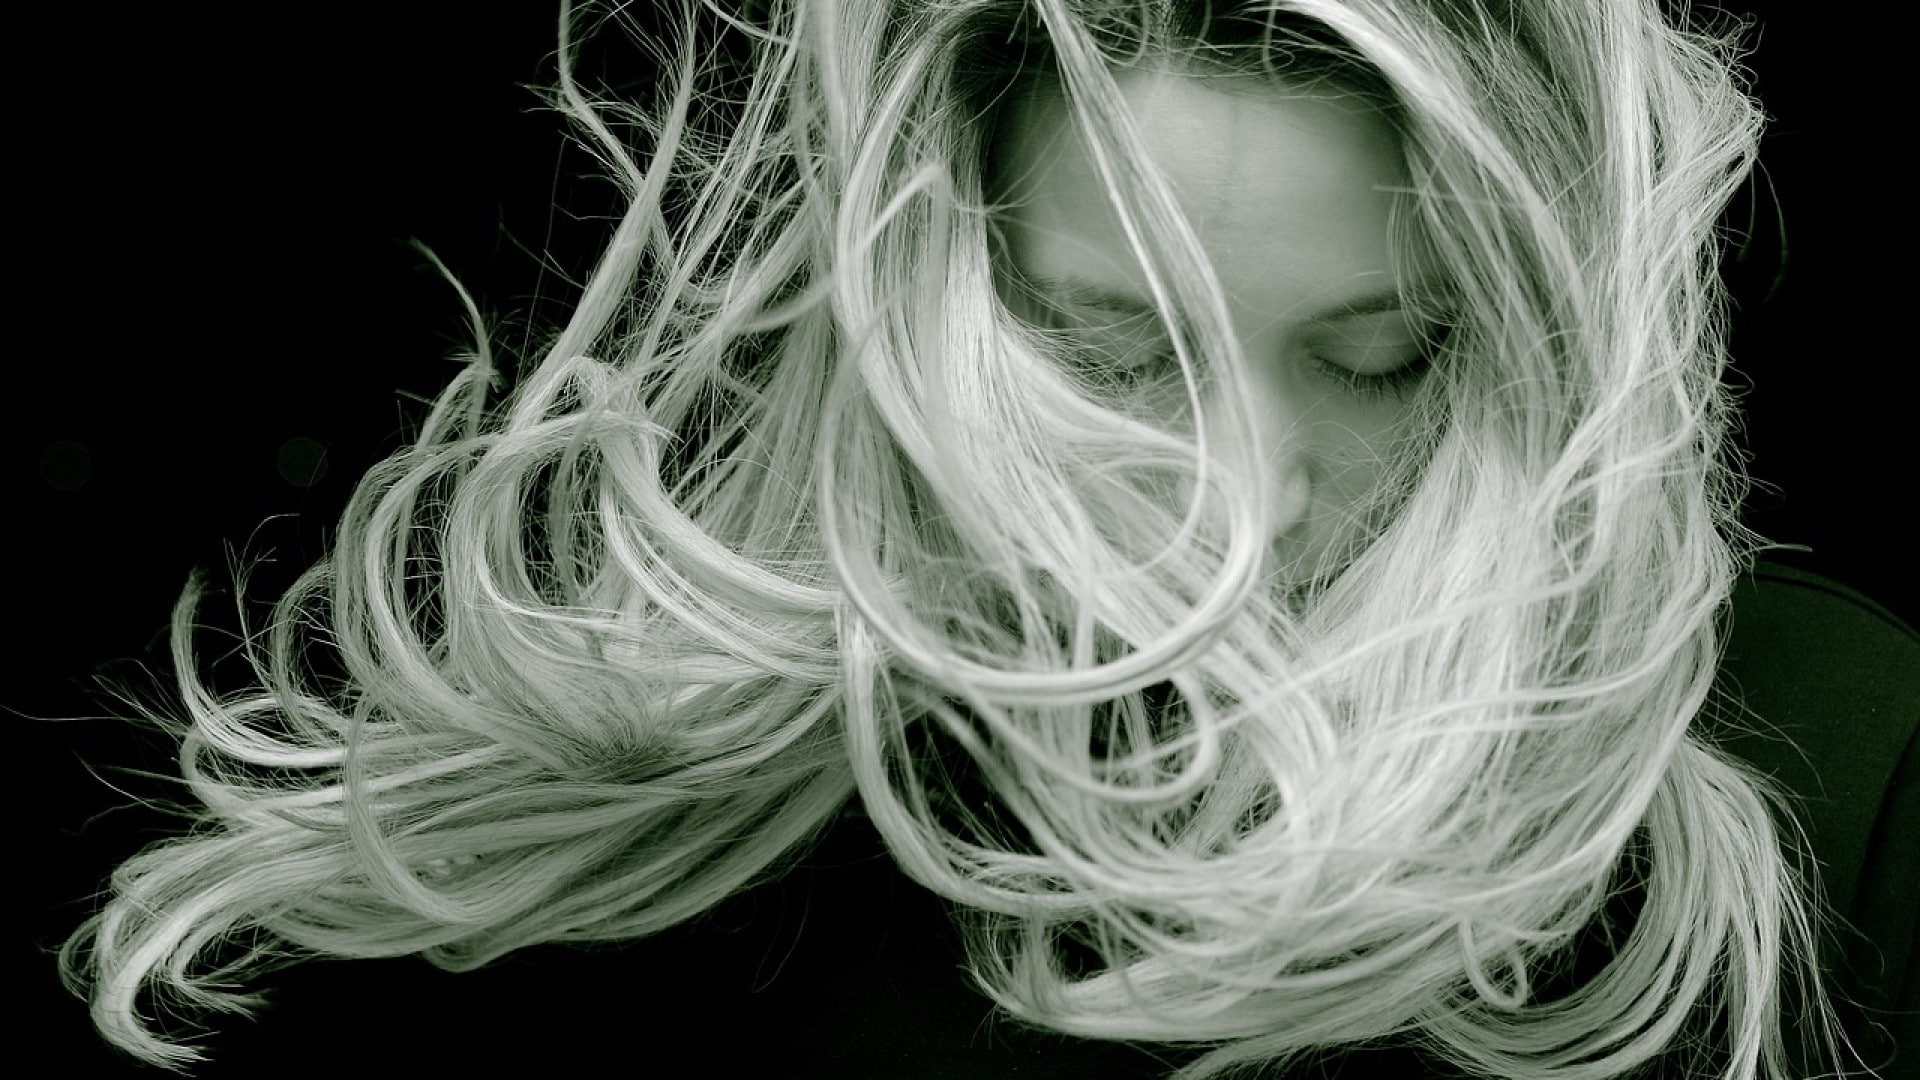 Une personne avec de longs cheveux blonds couvrant leur visage, les cheveux emportés par le vent ou en mouvement contre un fond sombre utilisent une technique